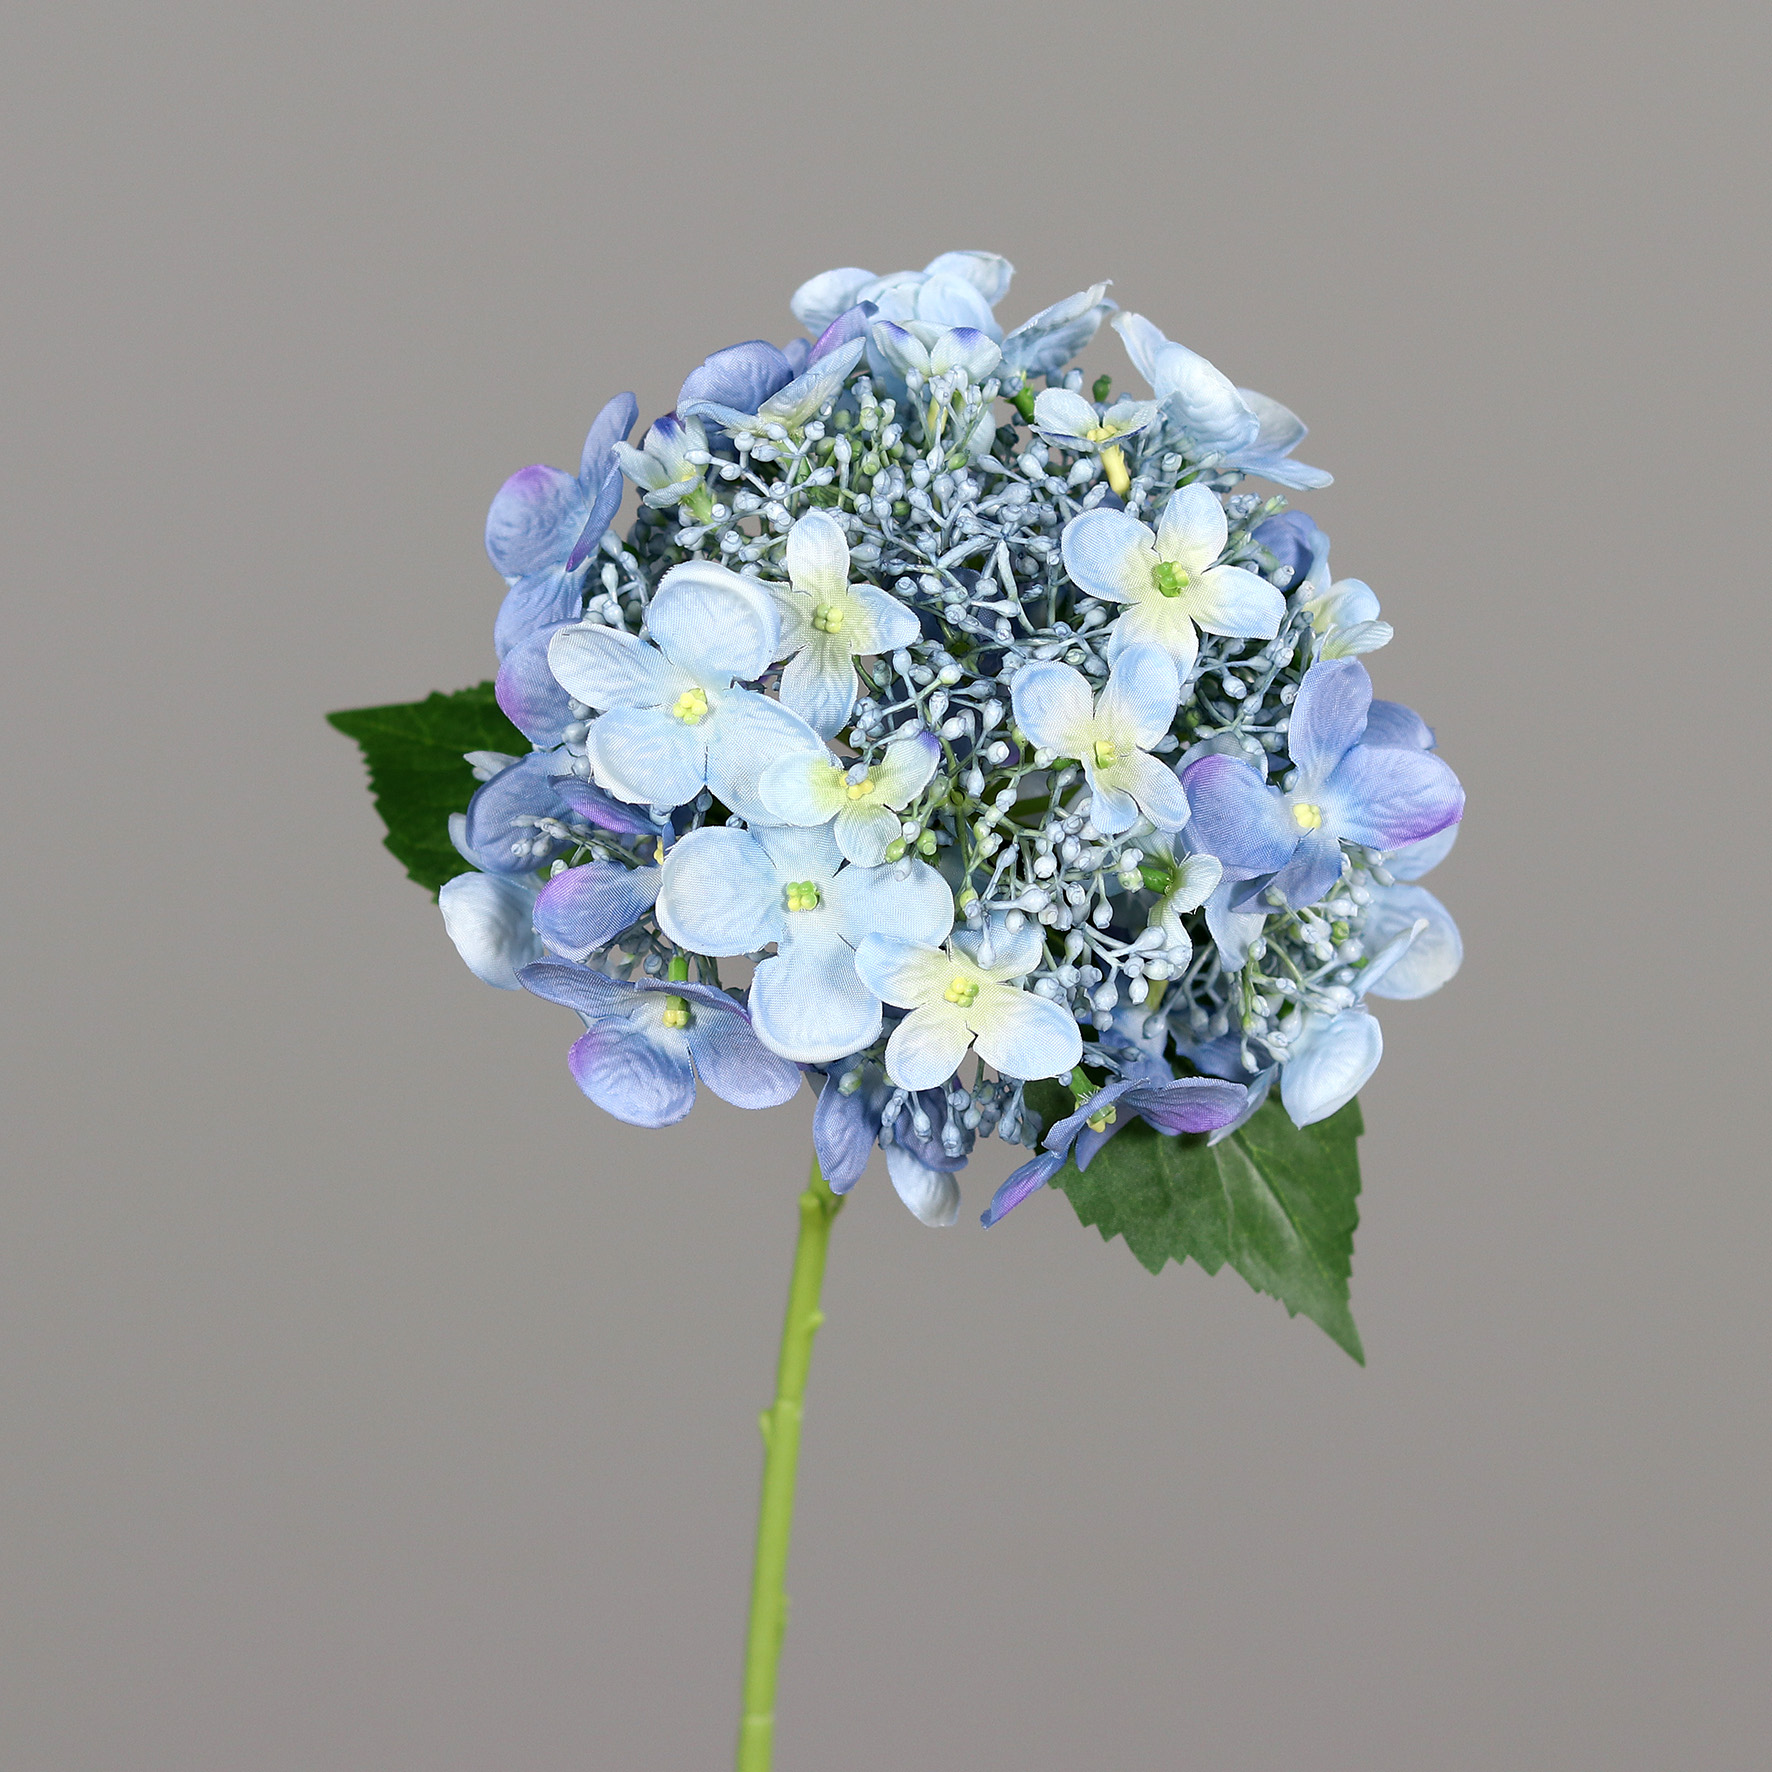 Sommer Hortensie 52cm blau DP Kunstlbumen künstliche Blumen Hortensien Hydrangea